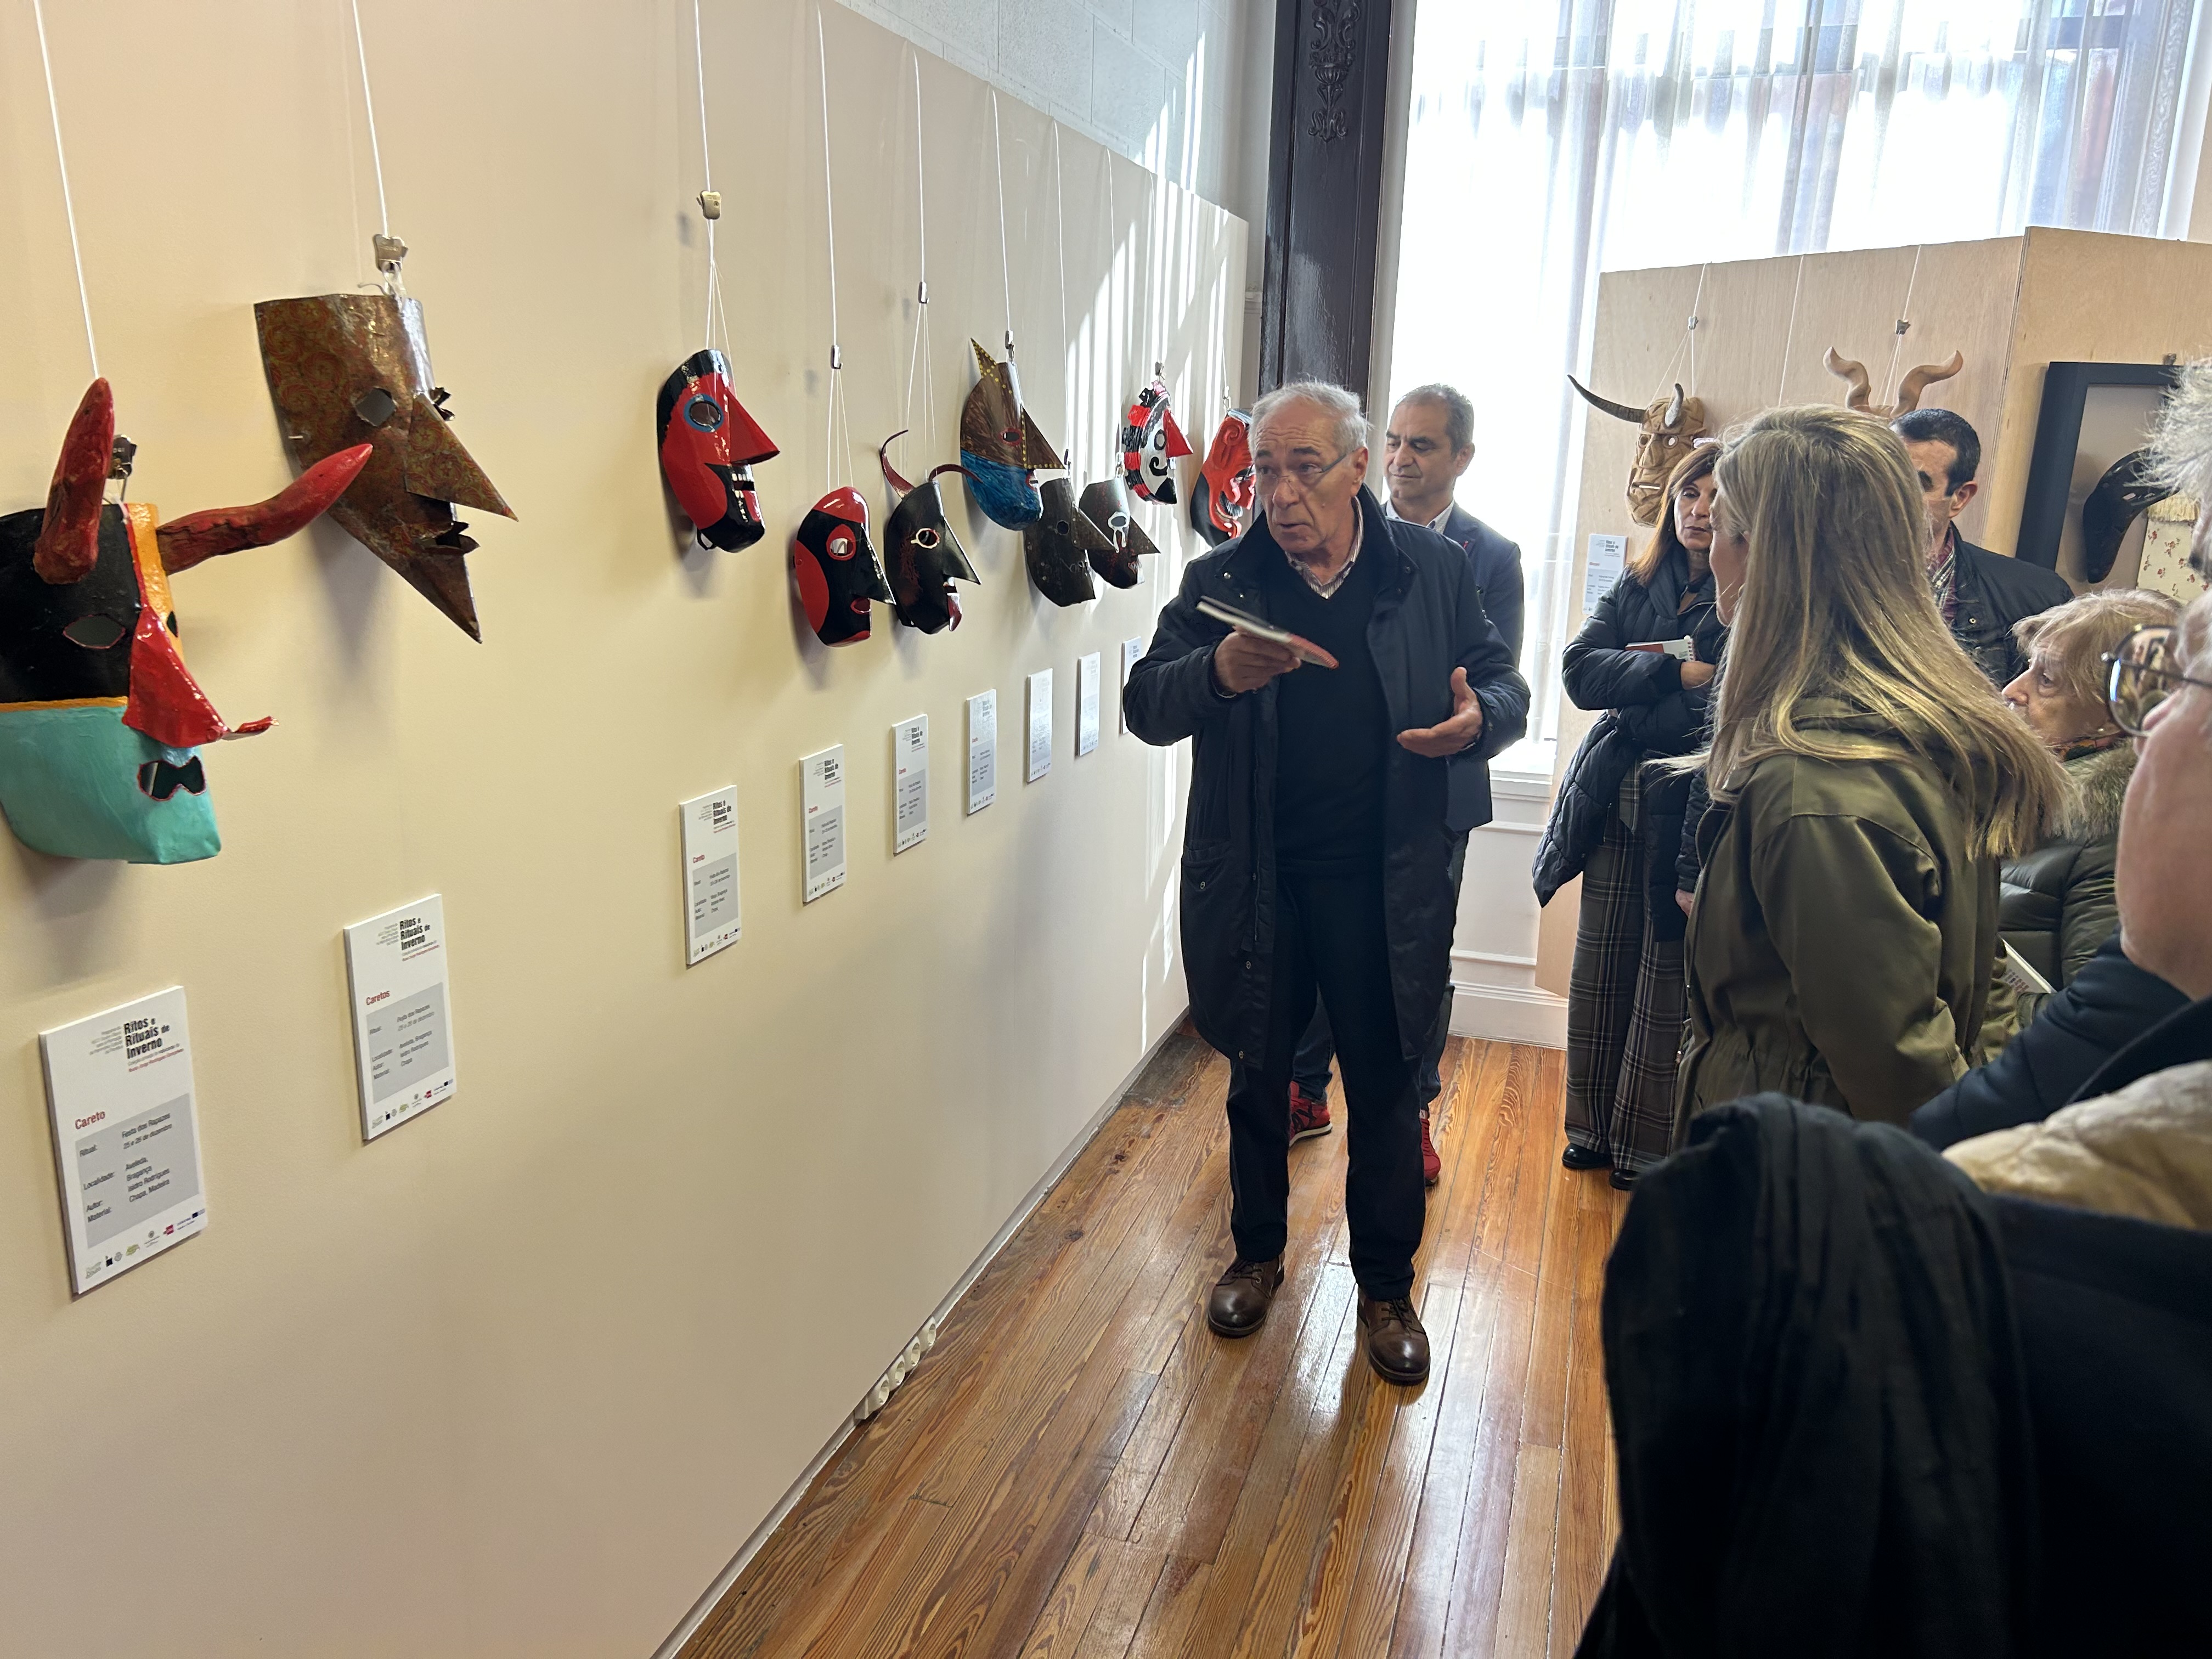 El antropólogo y presidente de la Academia Ibérica de la Mascara, Antonio Tiza, ha sido encargado de dirigir la visita guiada a la exposición.